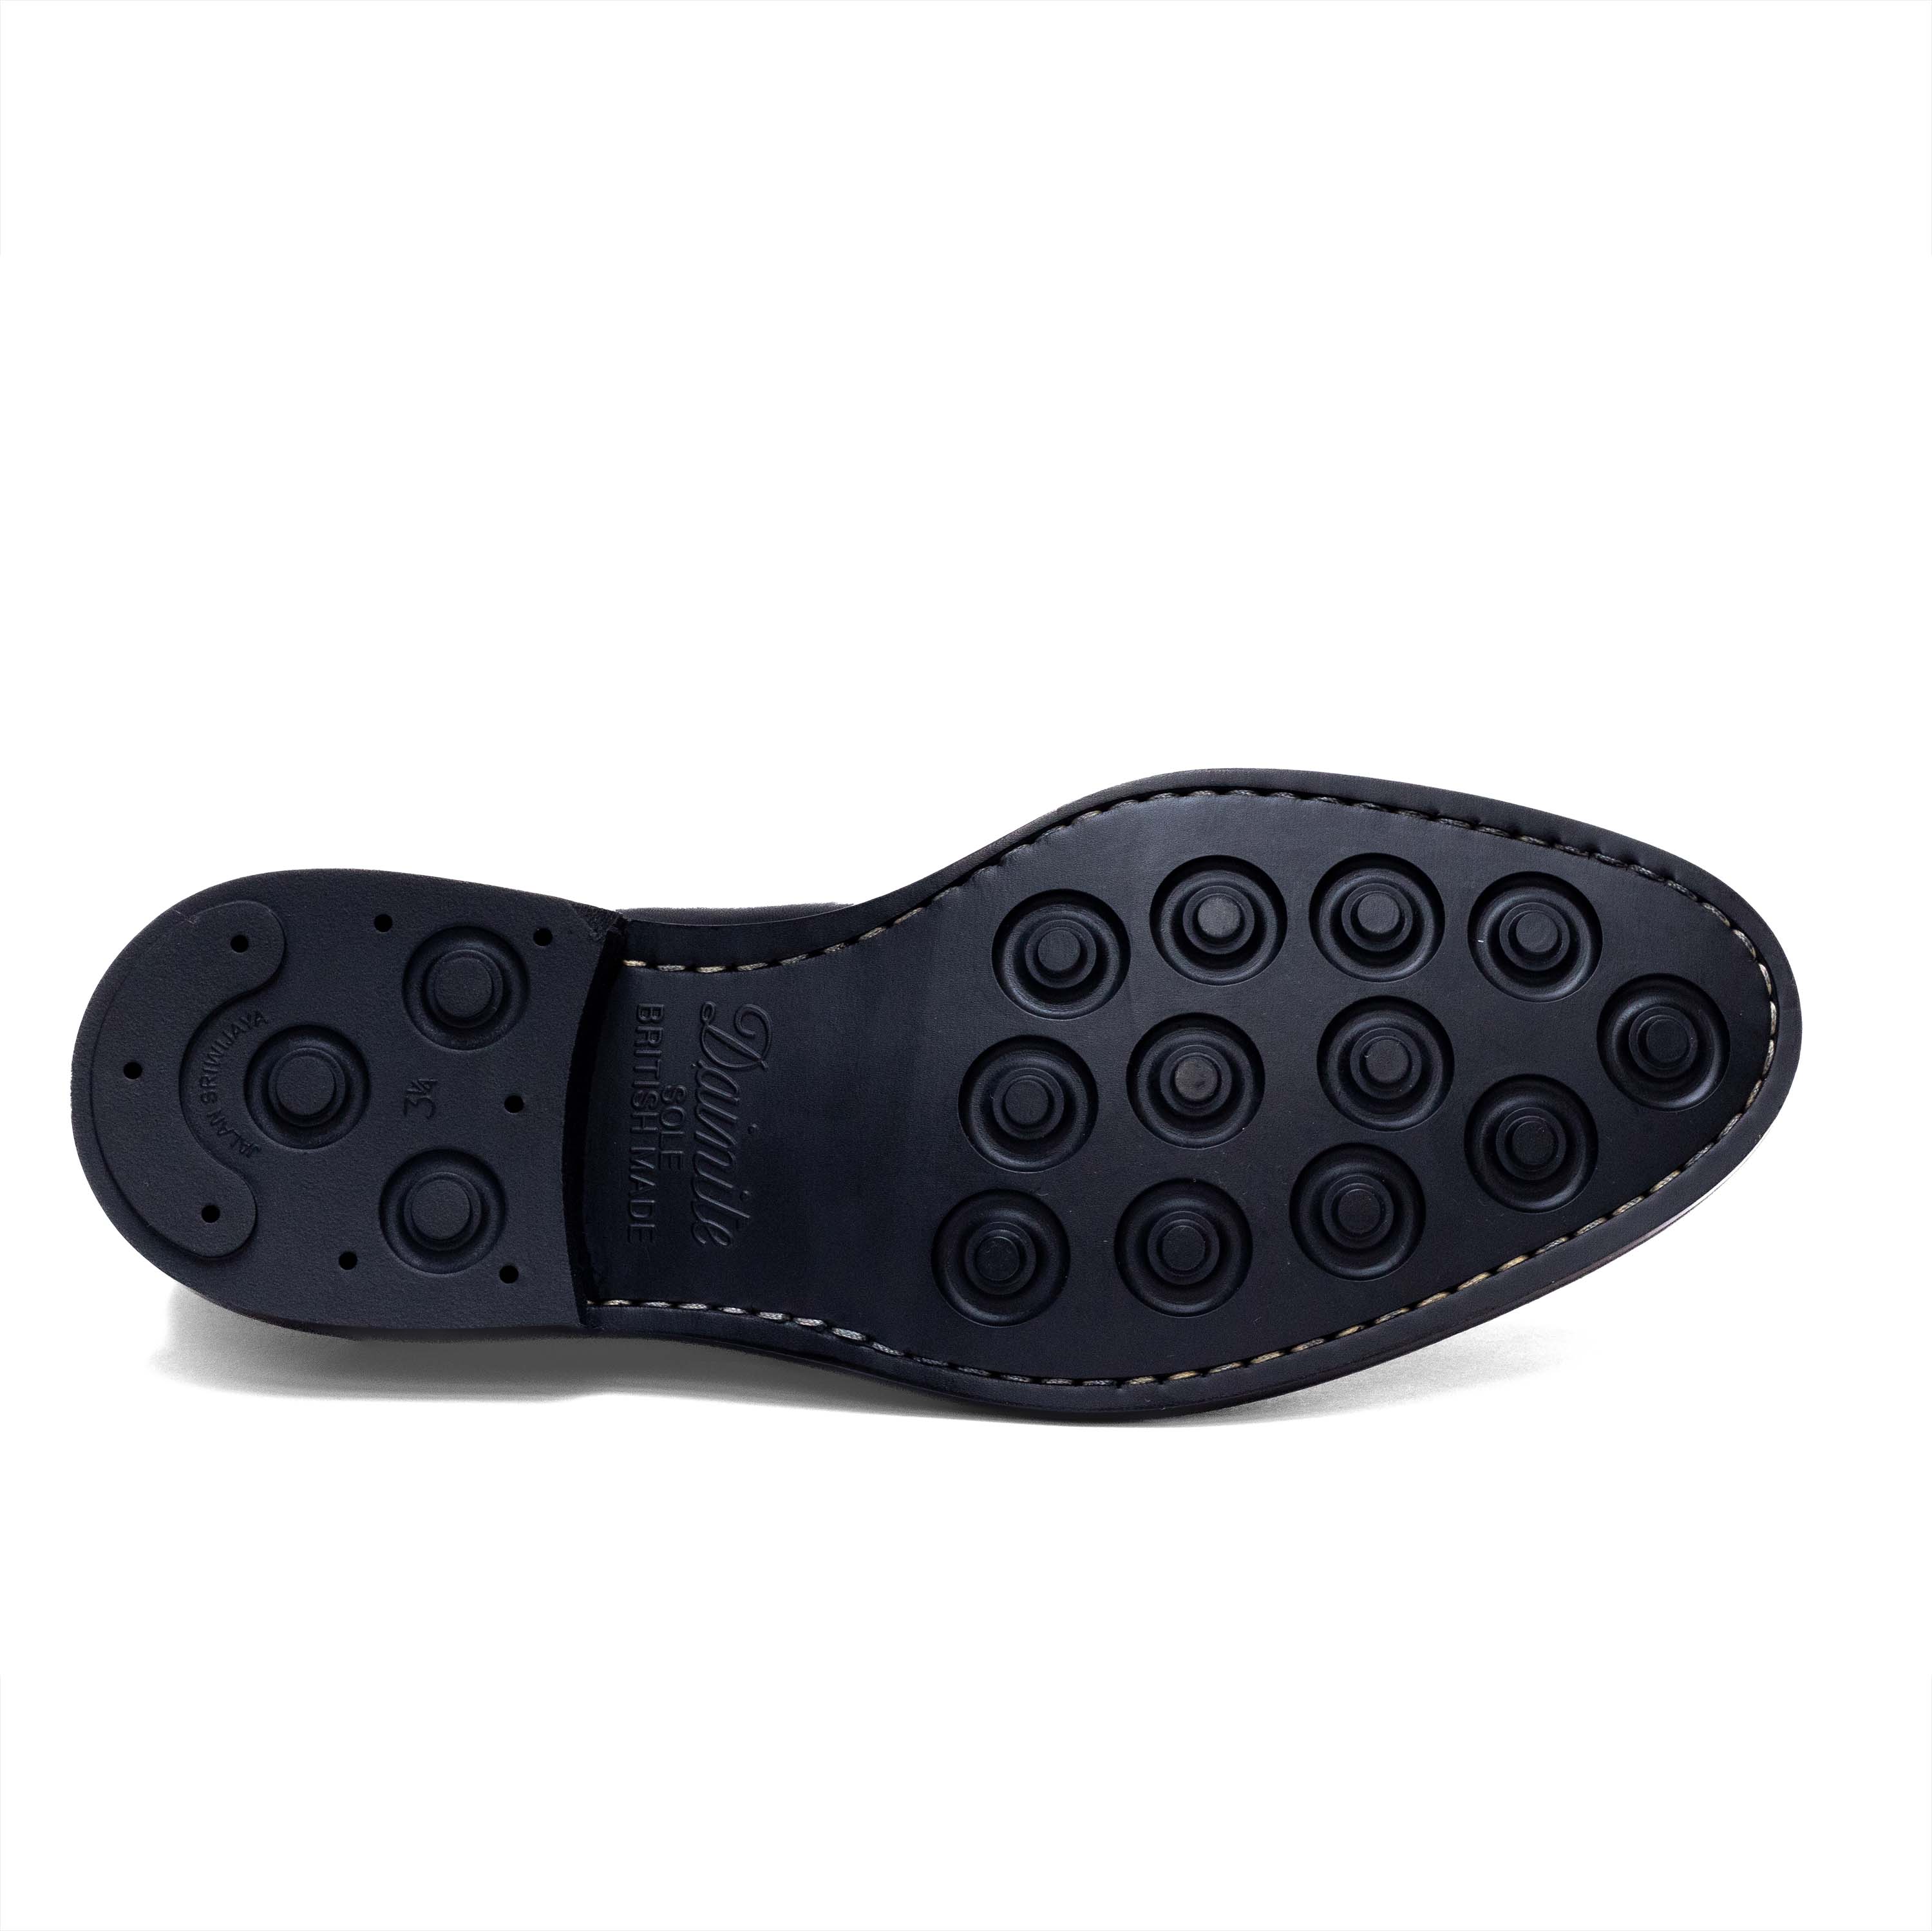 Men's Plain Toe / Black Calf 98651